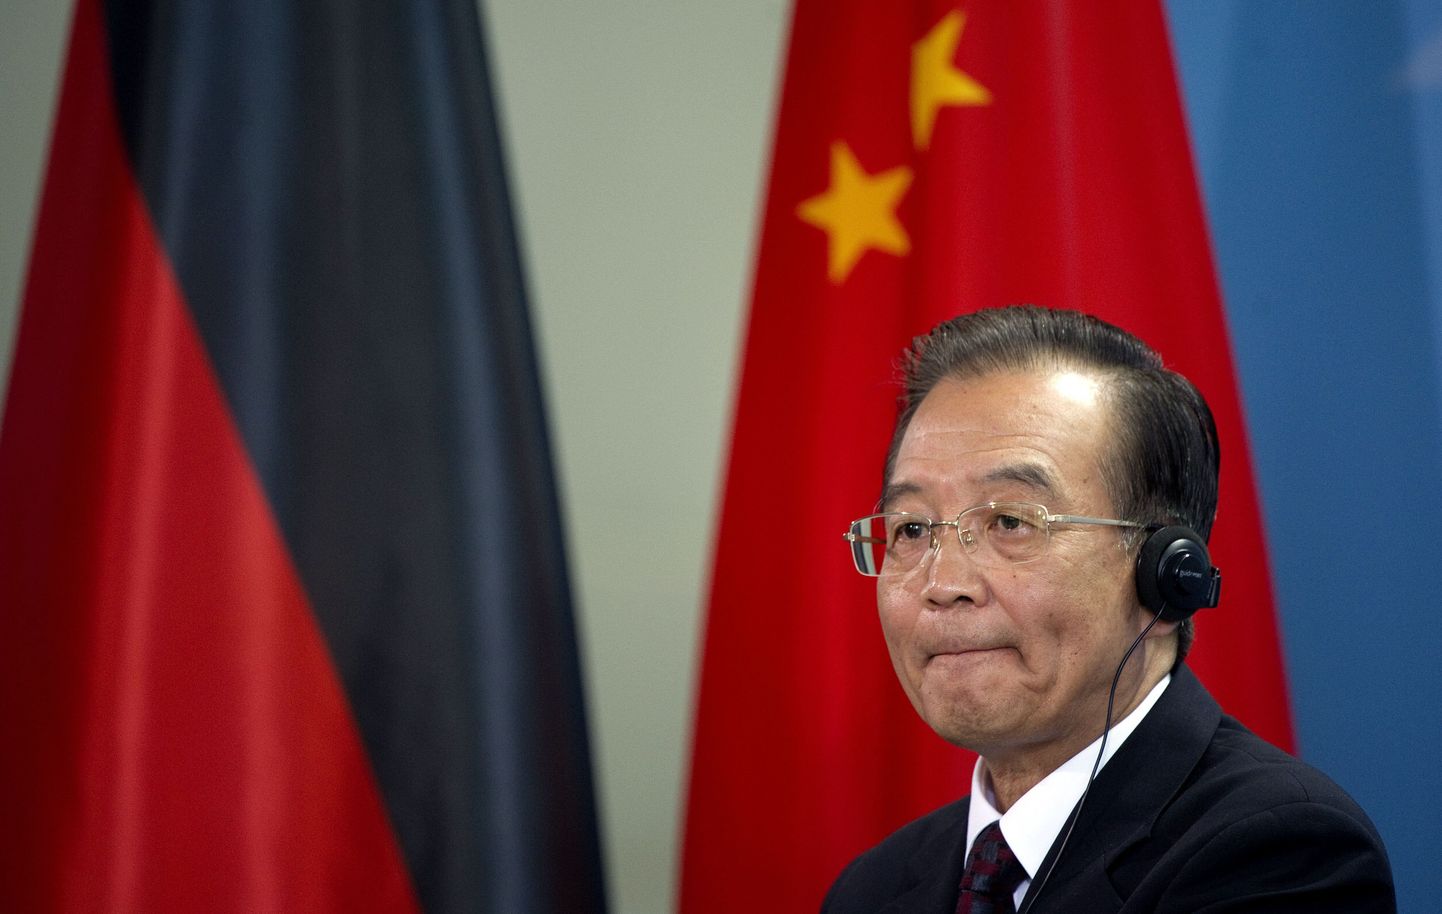 Hiina peaminister Wen Jiabao.